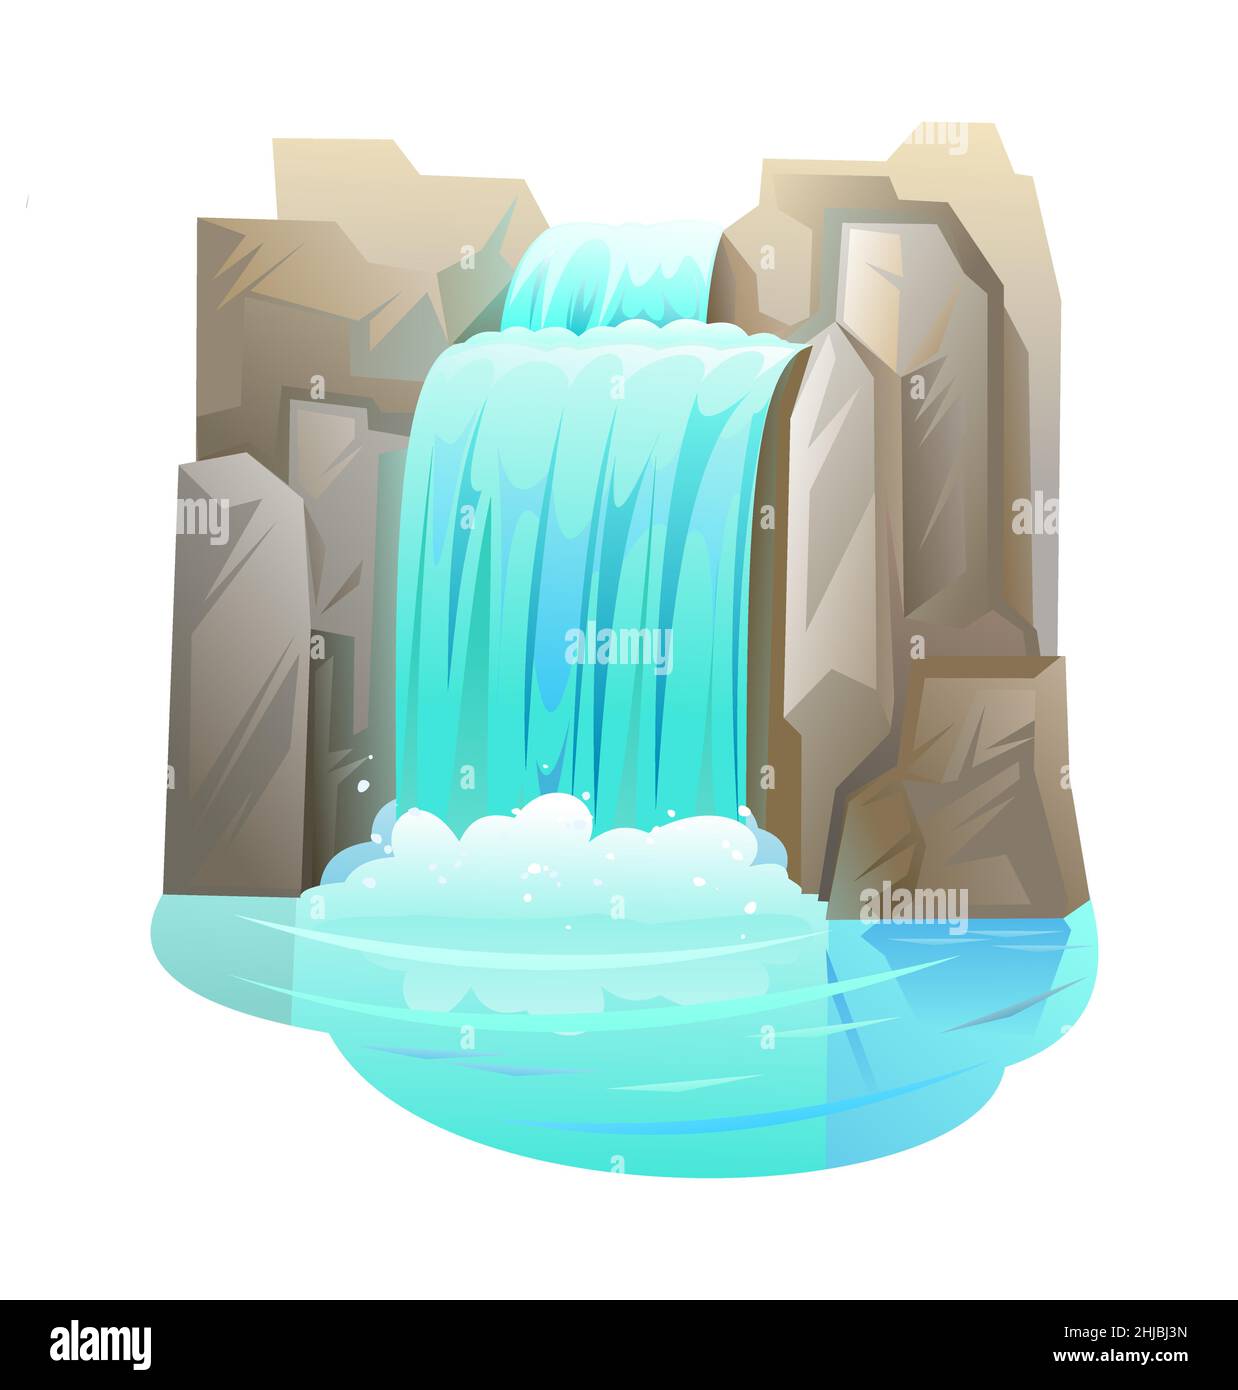 Wasserfall zwischen Felsen. Kaskade schimmert nach unten. Fließendes Wasser. Graue Steine. Objekt auf weißem Hintergrund isoliert. Cooler Cartoon-Style. Vektor. Stock Vektor